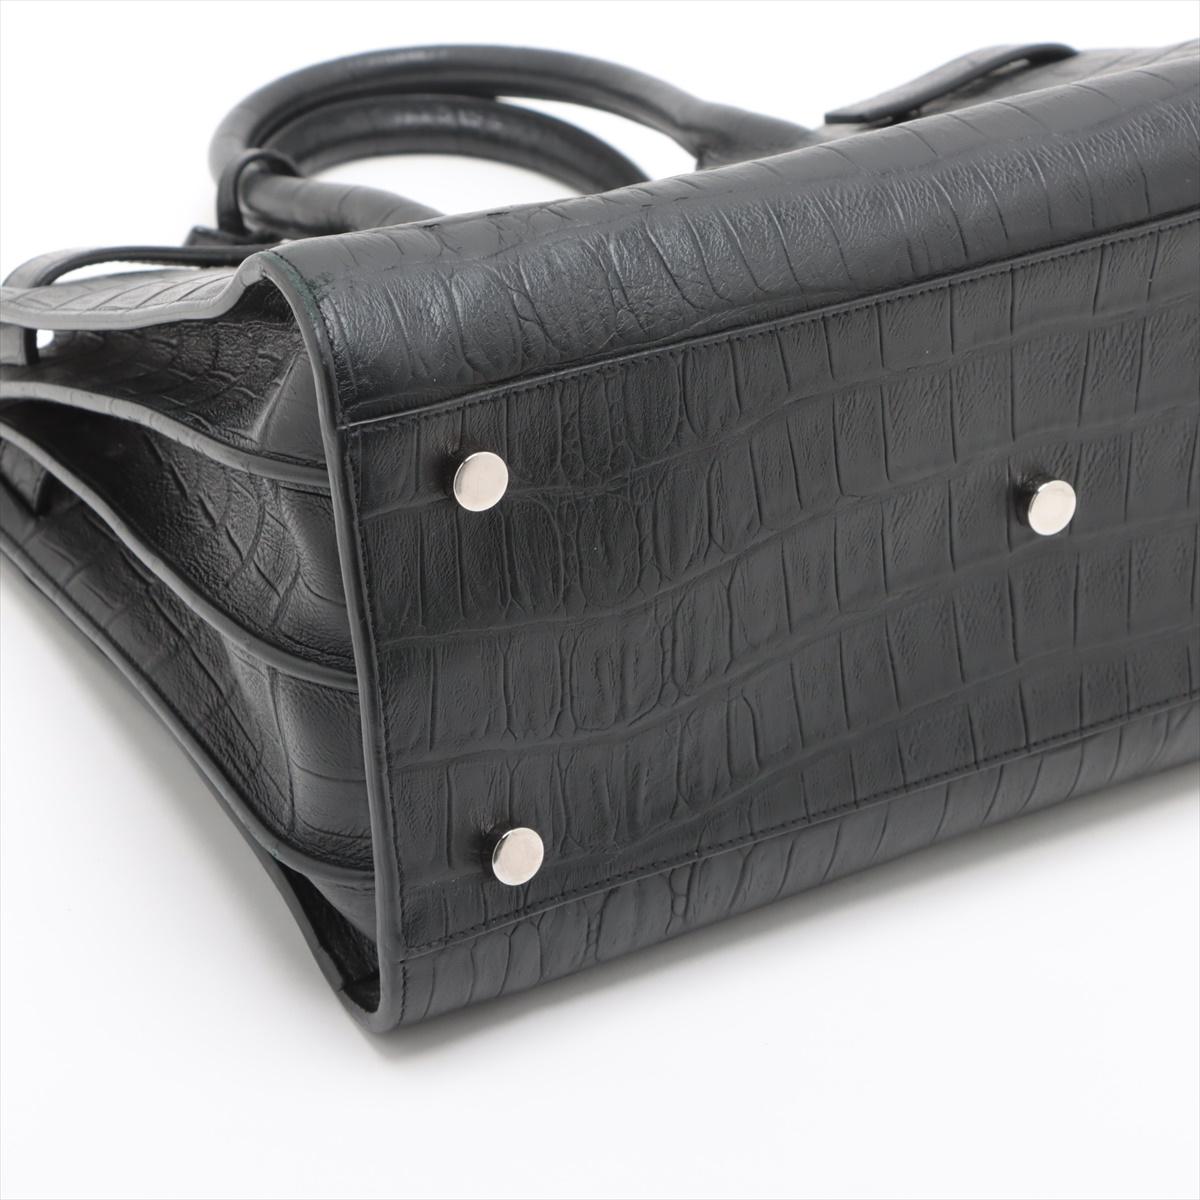 Saint Laurent Paris Sac de Jour Crocodile Embossed Leather Two-Way Handbag Black For Sale 1